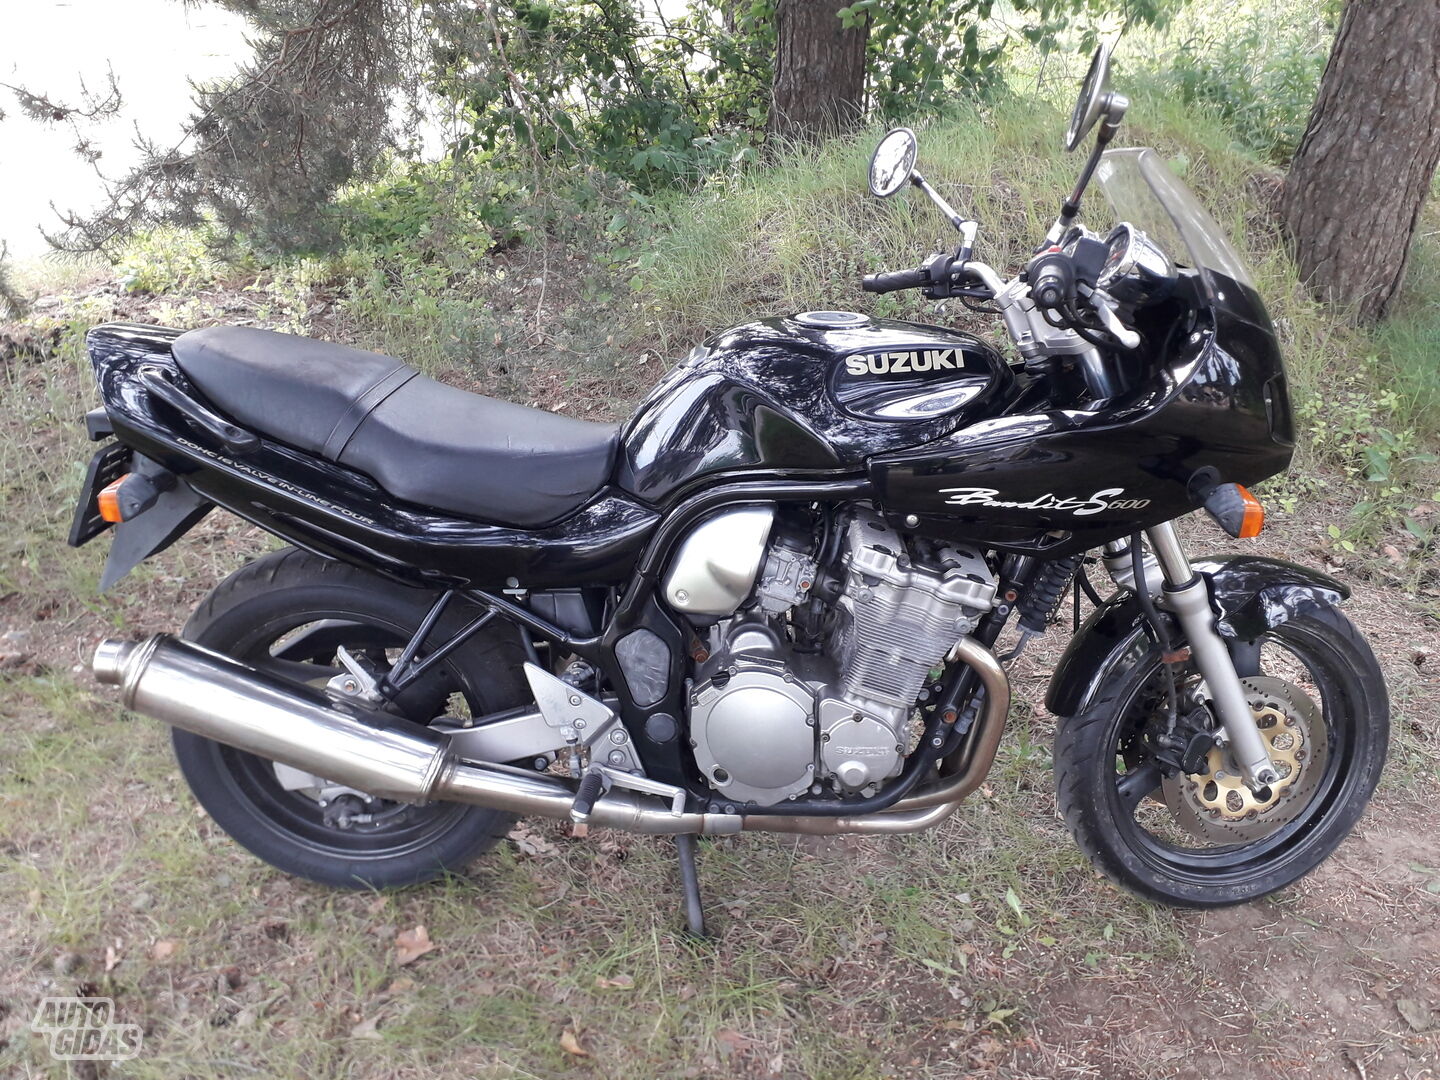 Suzuki GSF / Bandit 2000 y Classical / Streetbike motorcycle